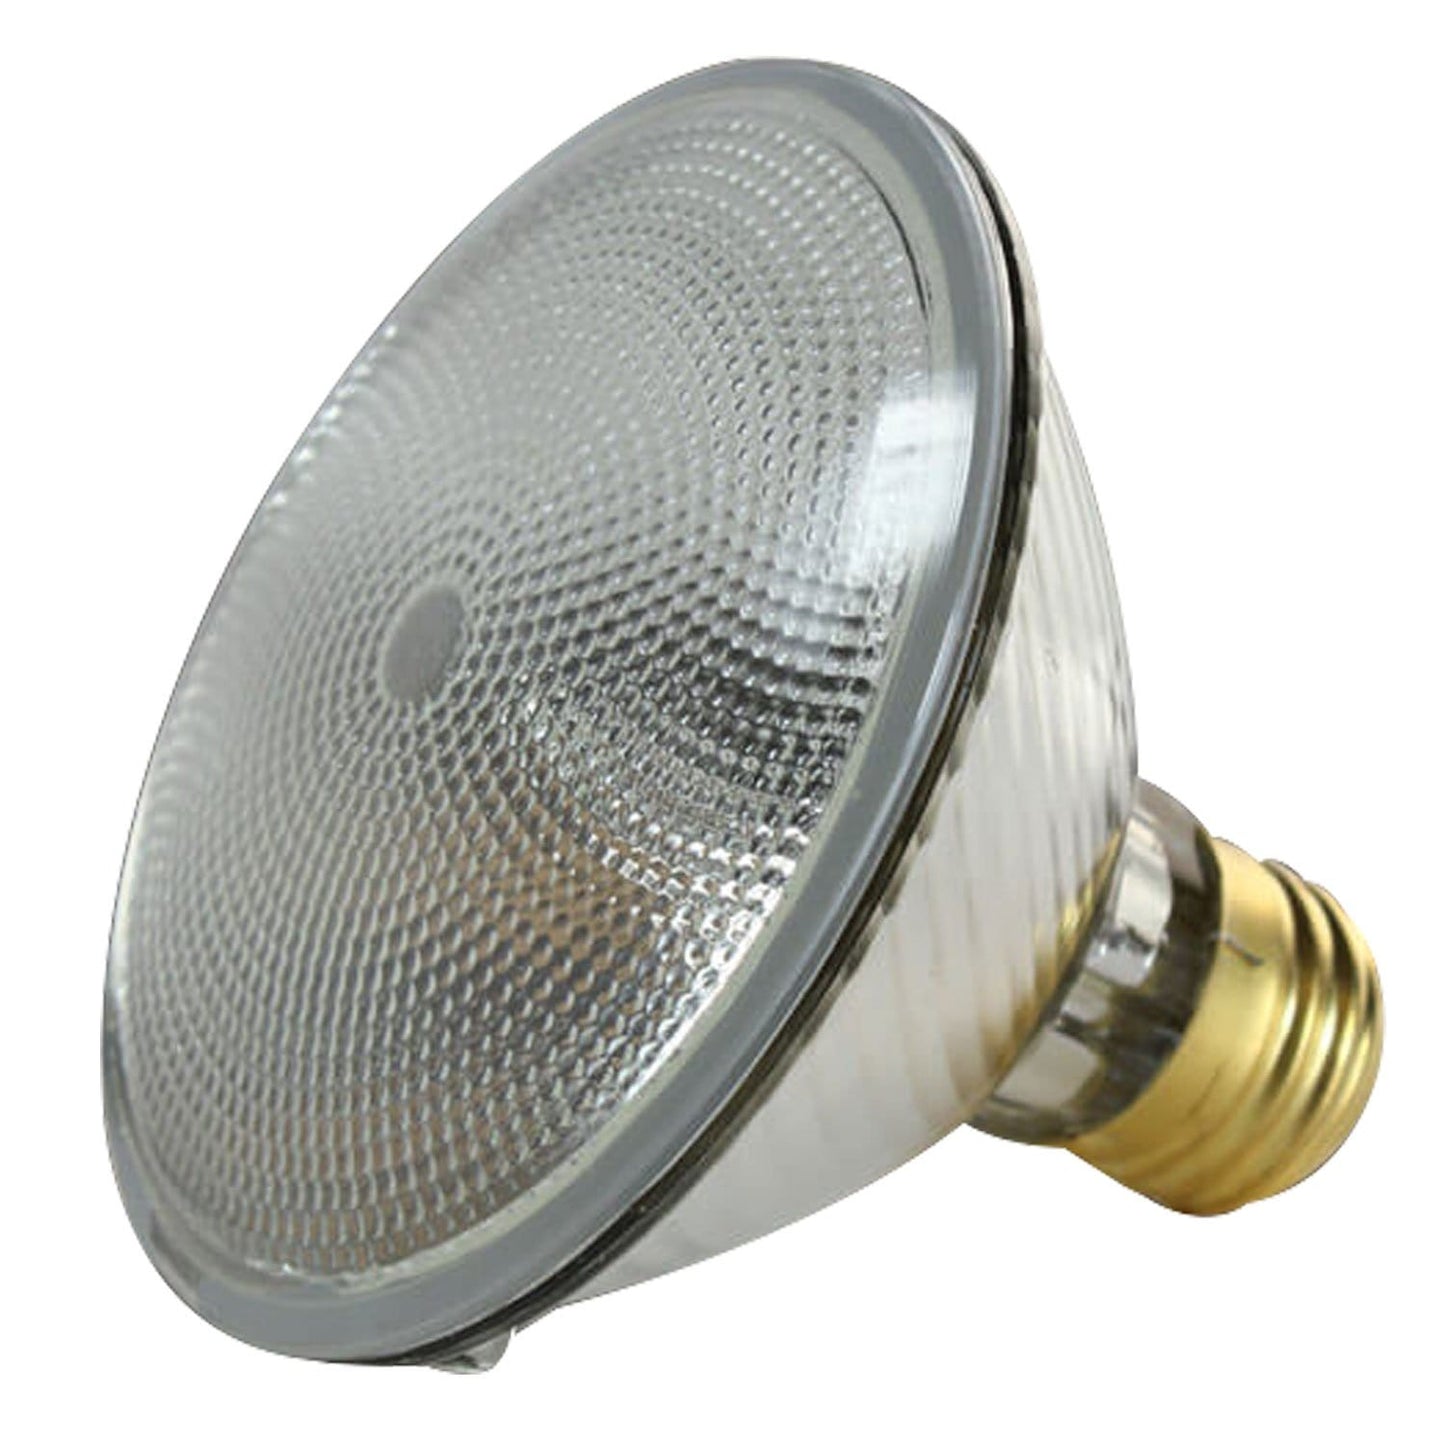 Ushio 38PAR30LN/FL30/120V 38W Lamp - ProSound and Stage Lighting